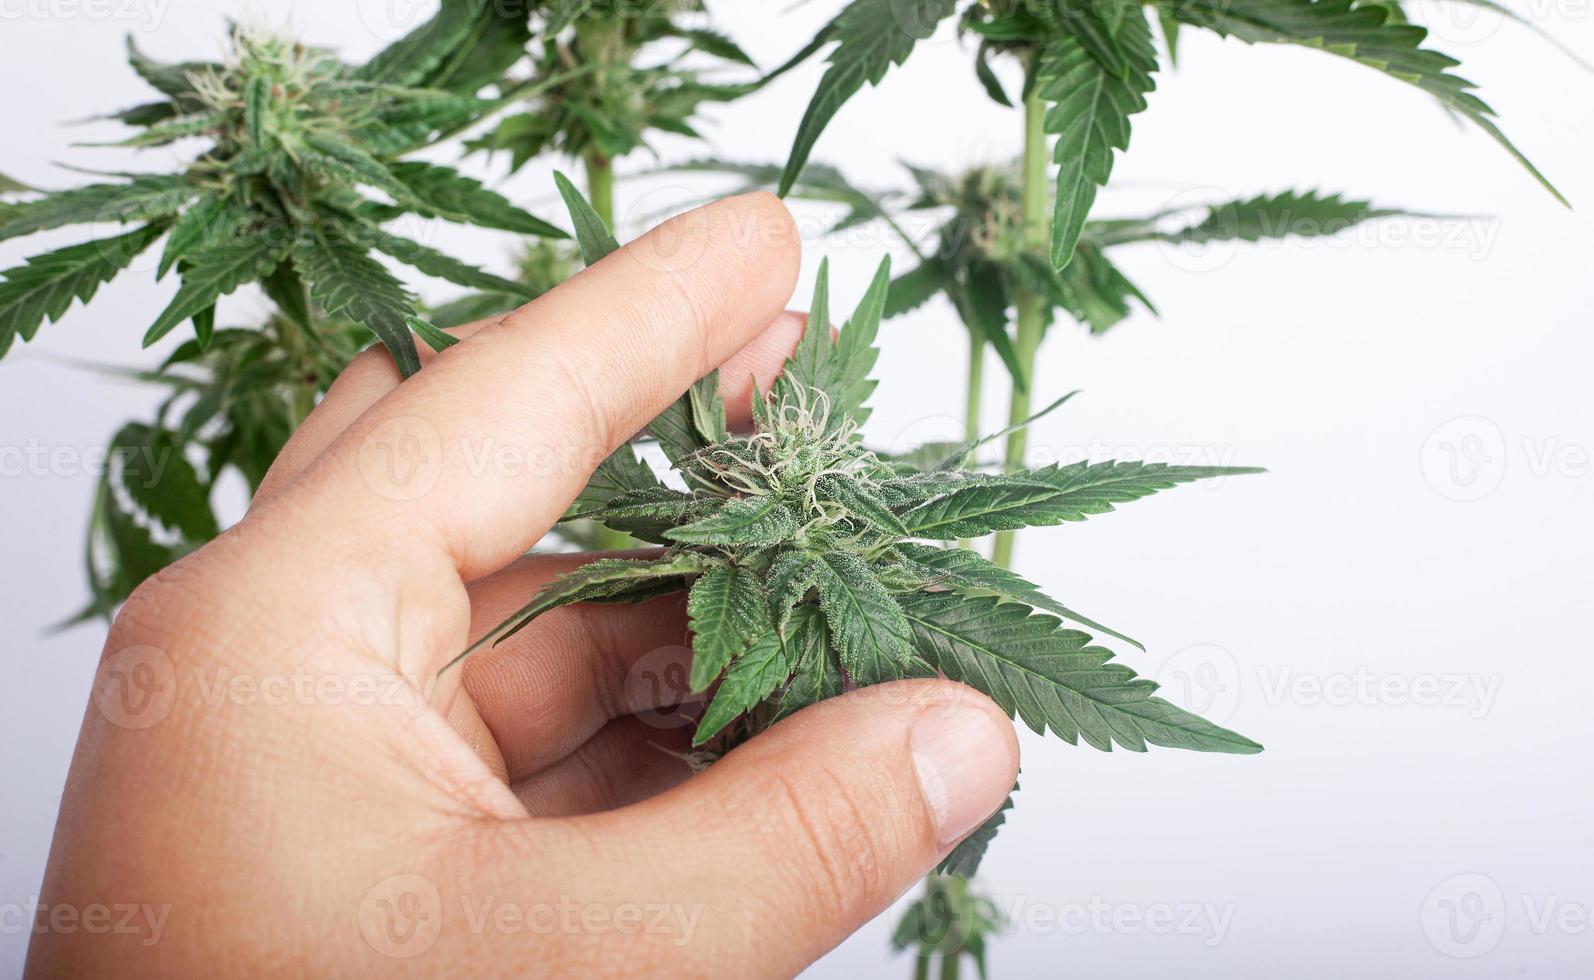 en odlare håller en cannabisknopp medan han letar efter mögel foto